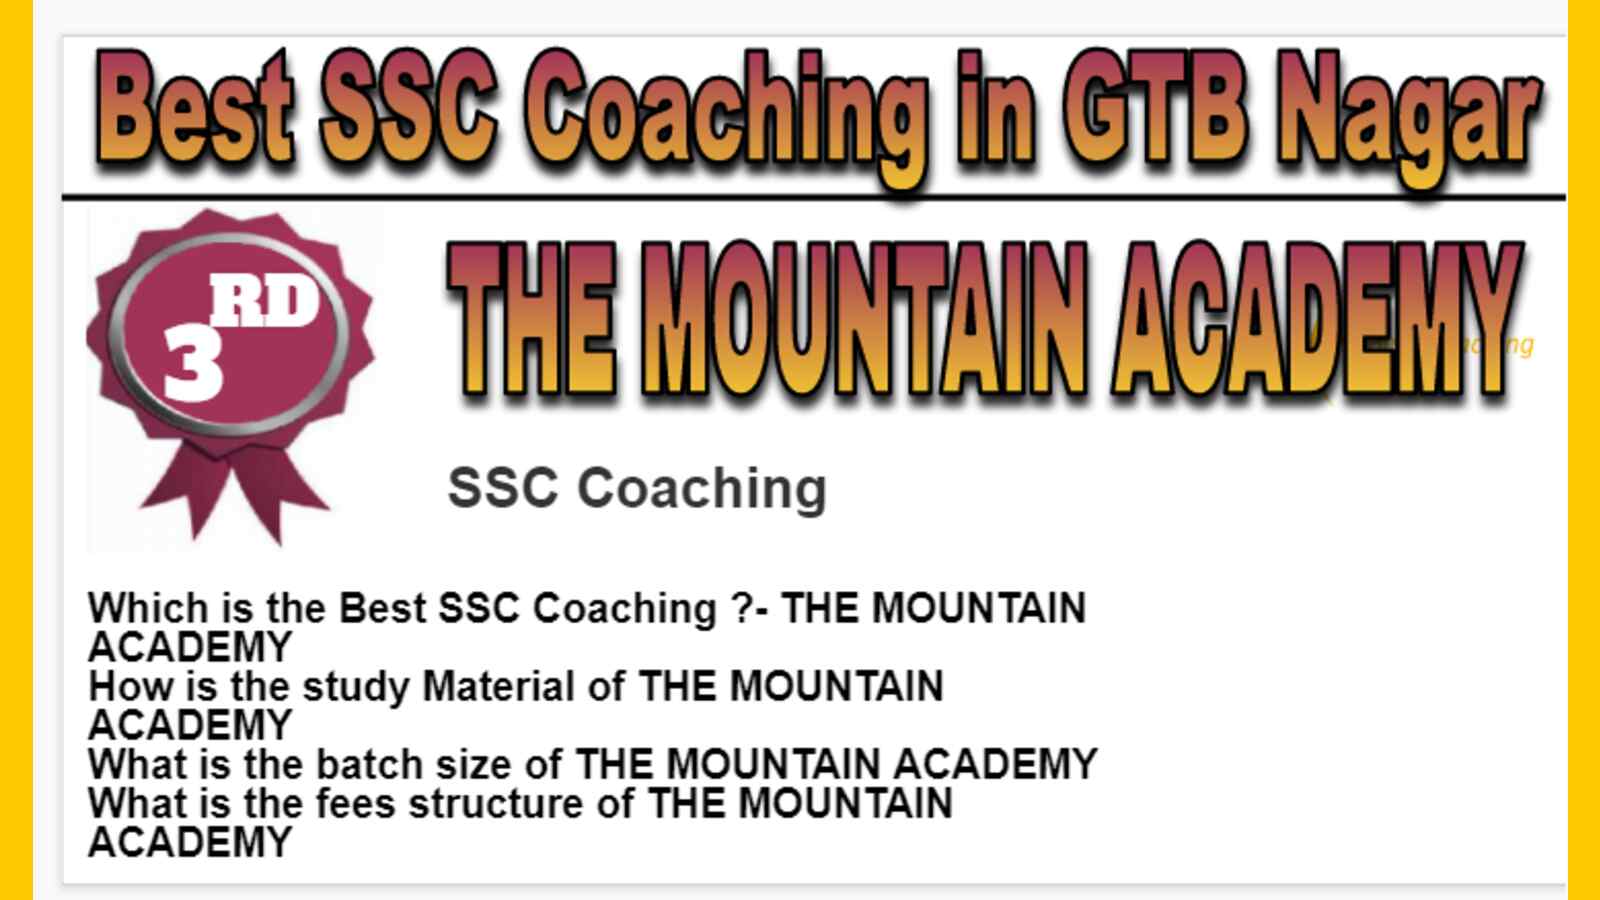 Rank 3 Best SSC Coaching in GTB Nagar